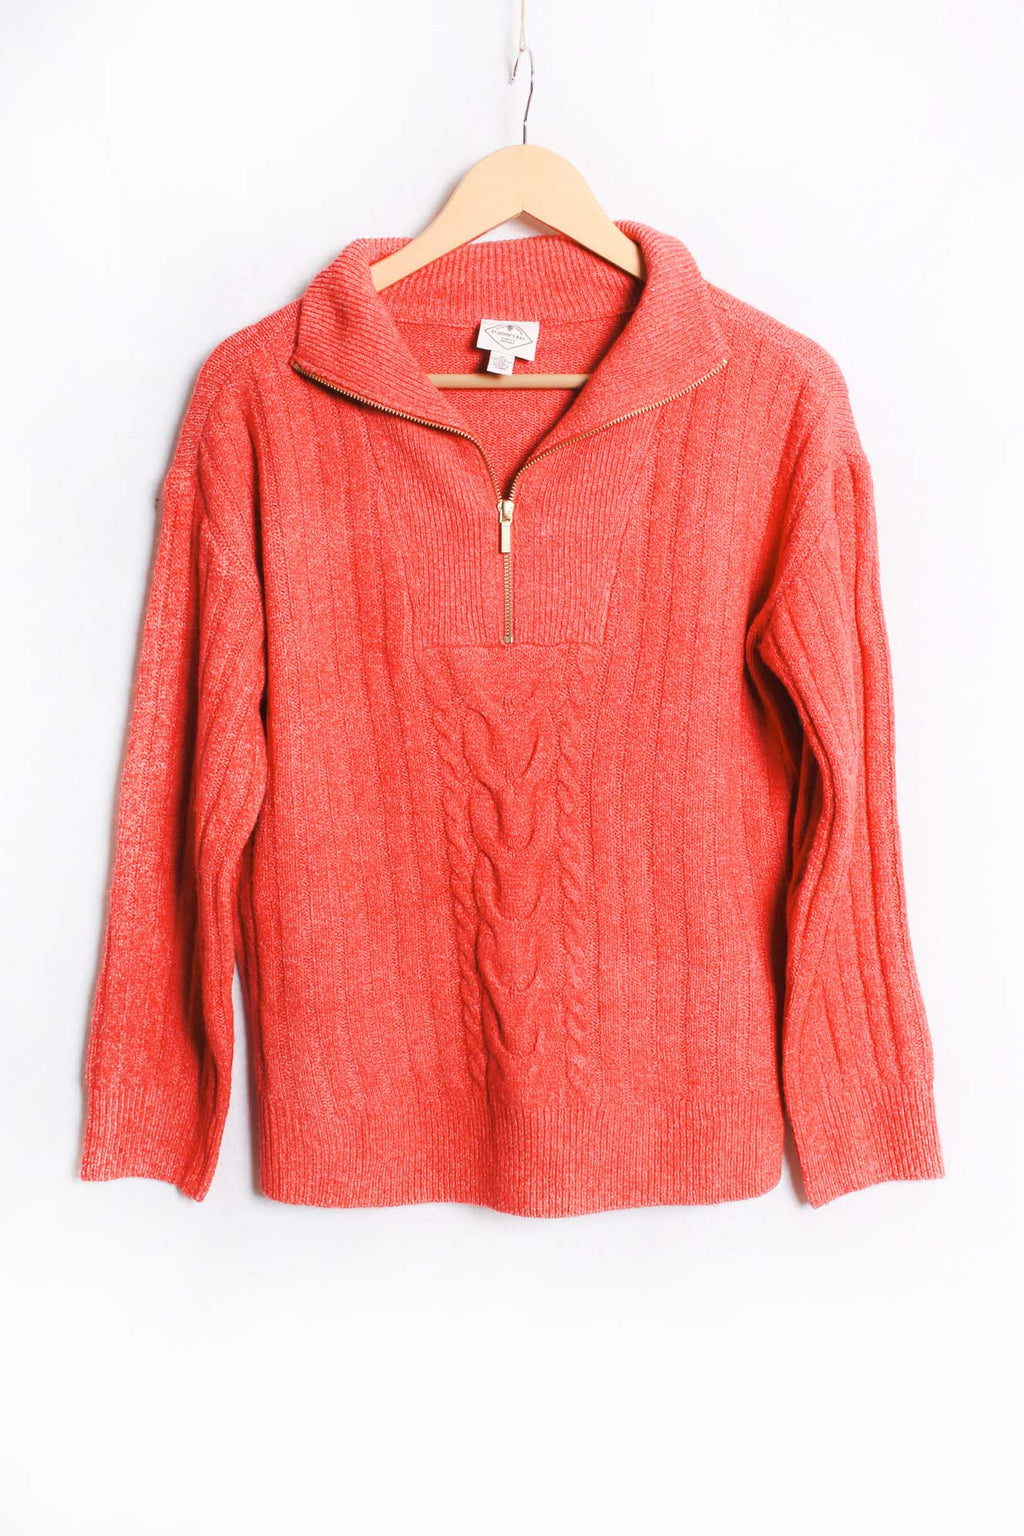 Women's Long Sleeve 1/4 Zip Pullover Knit Sweater